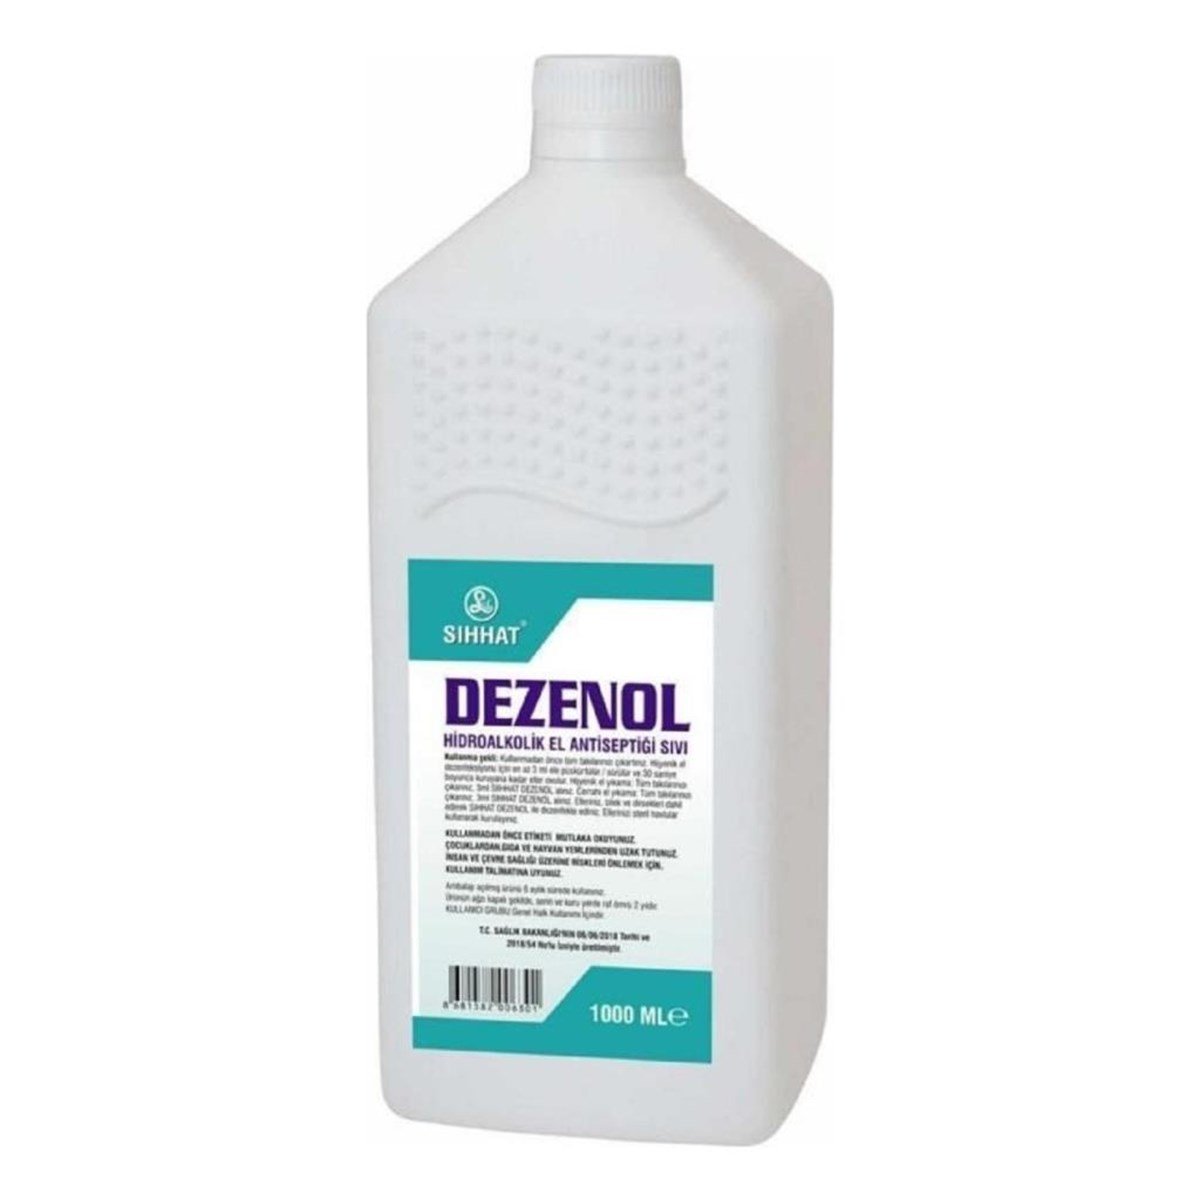 Dezenol 1000 ml Dezenfektan I gencayofis.com